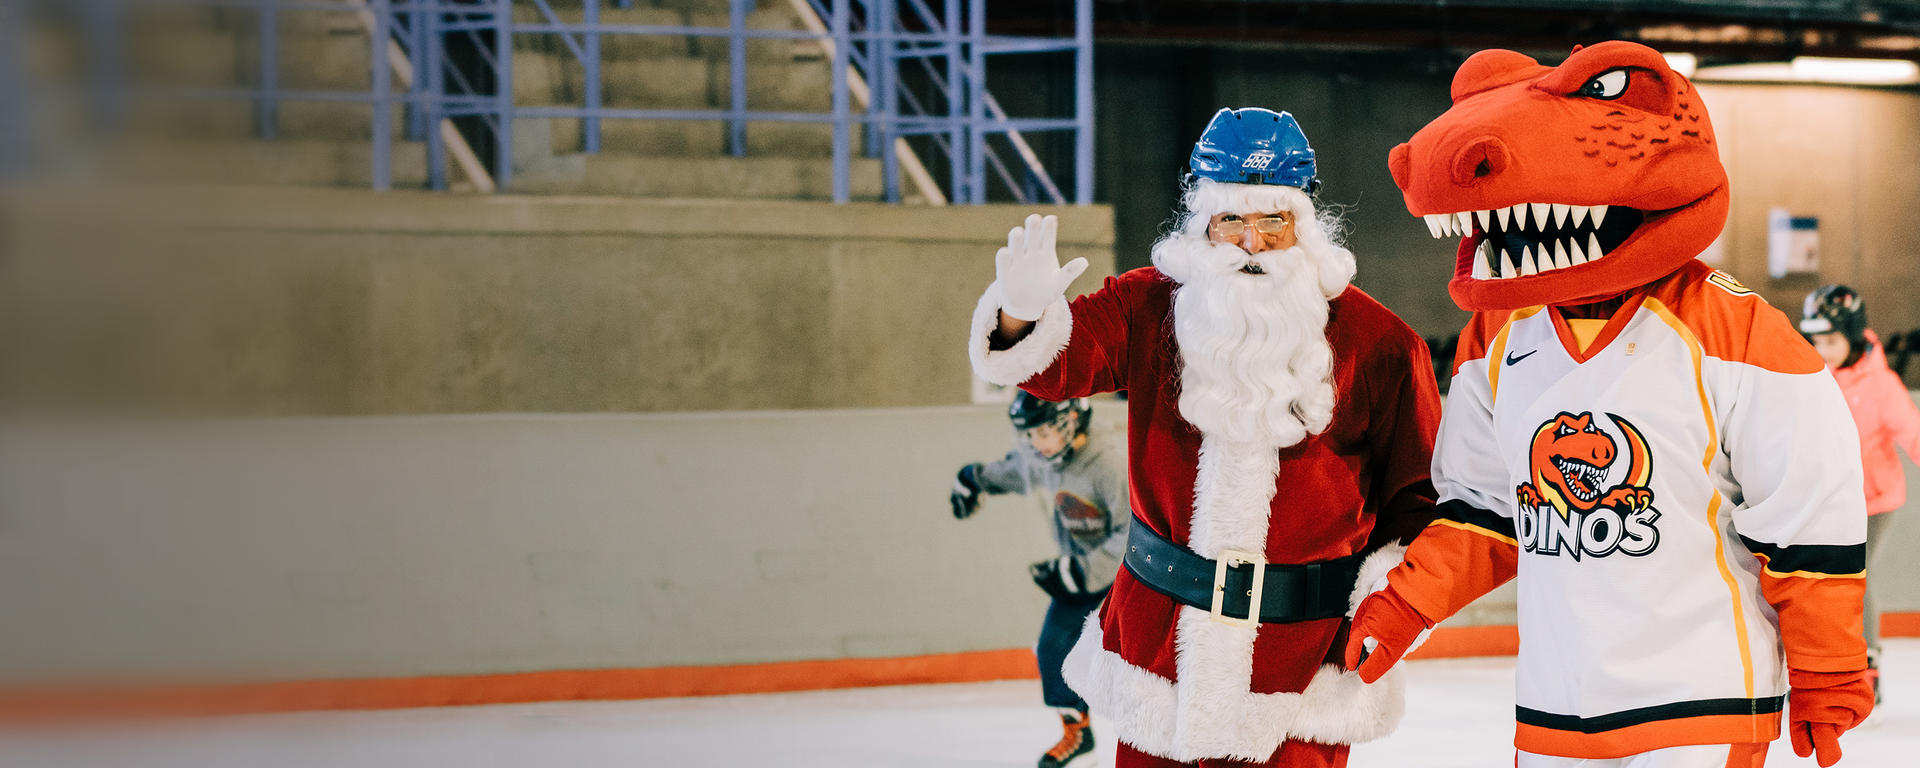 Santa and Rex skating together 